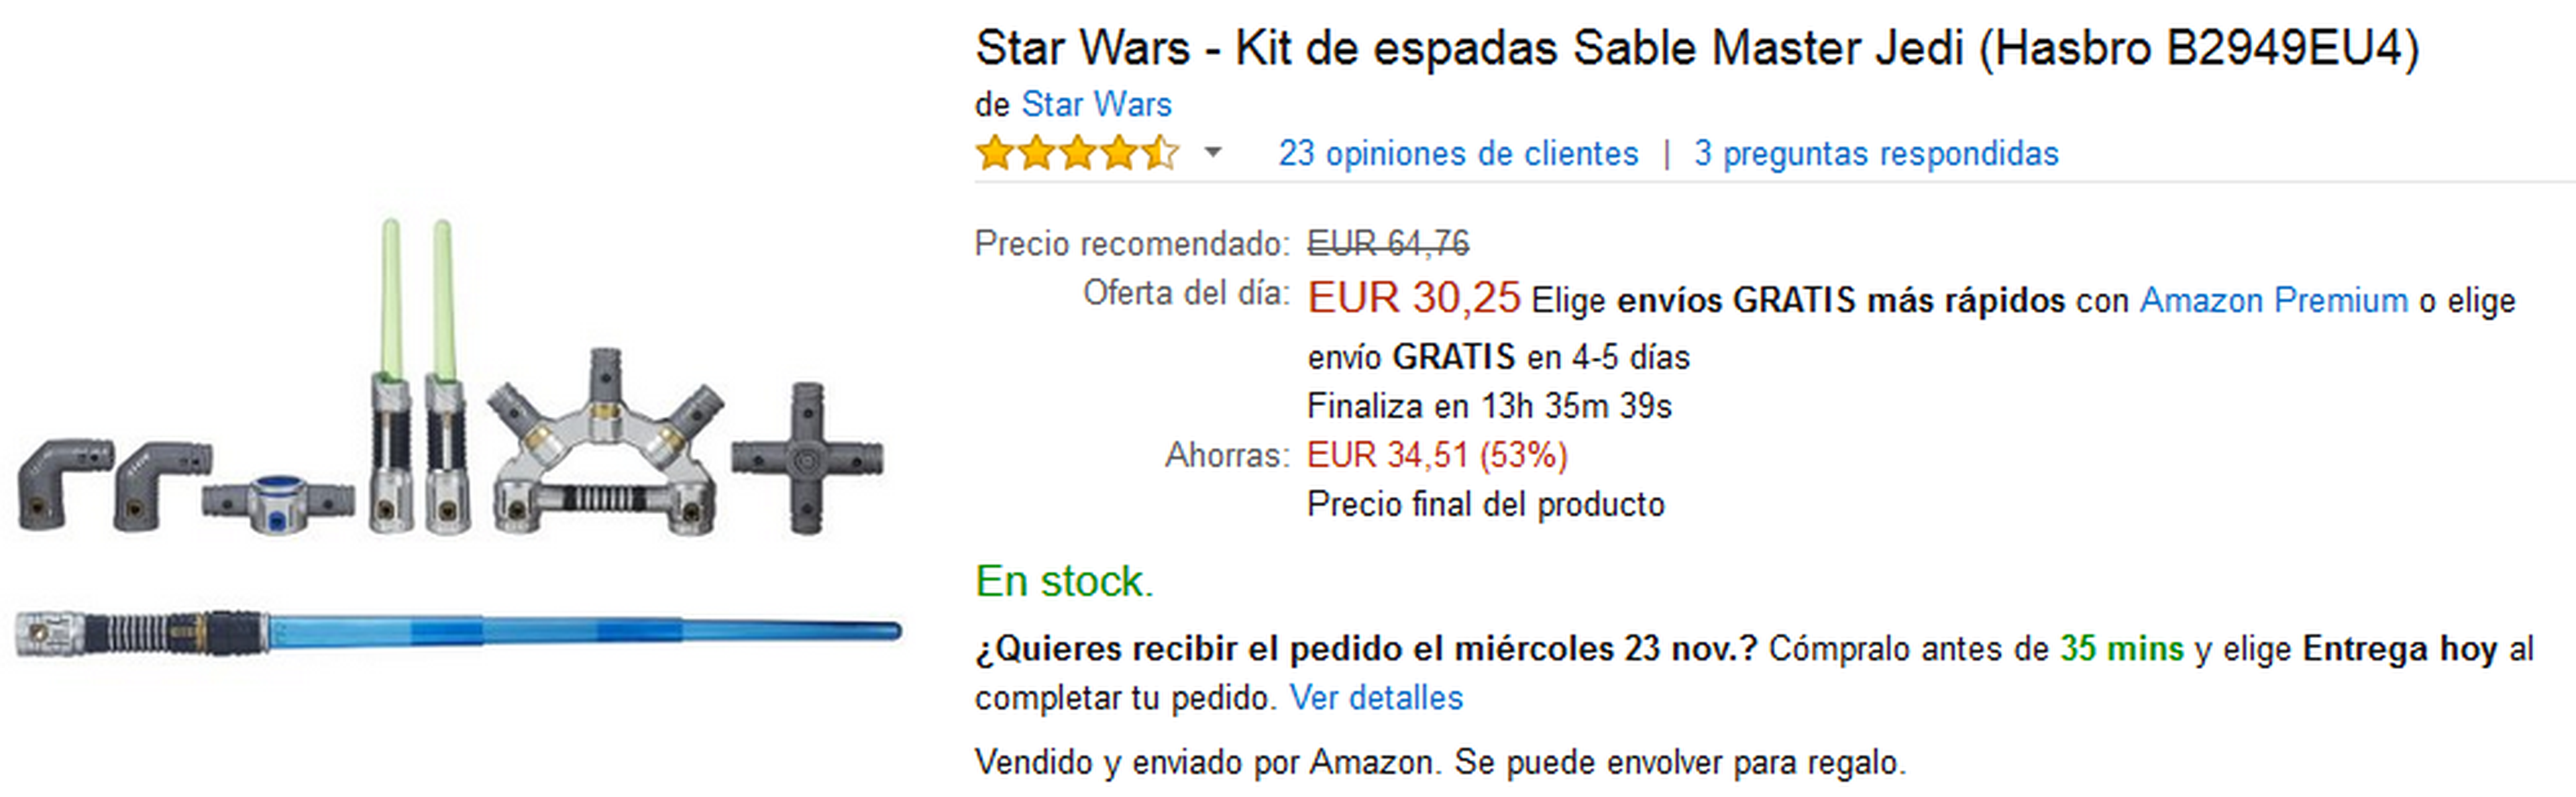 Kit de espadas Sable Master Jedi de Star Wars por 30,25 €